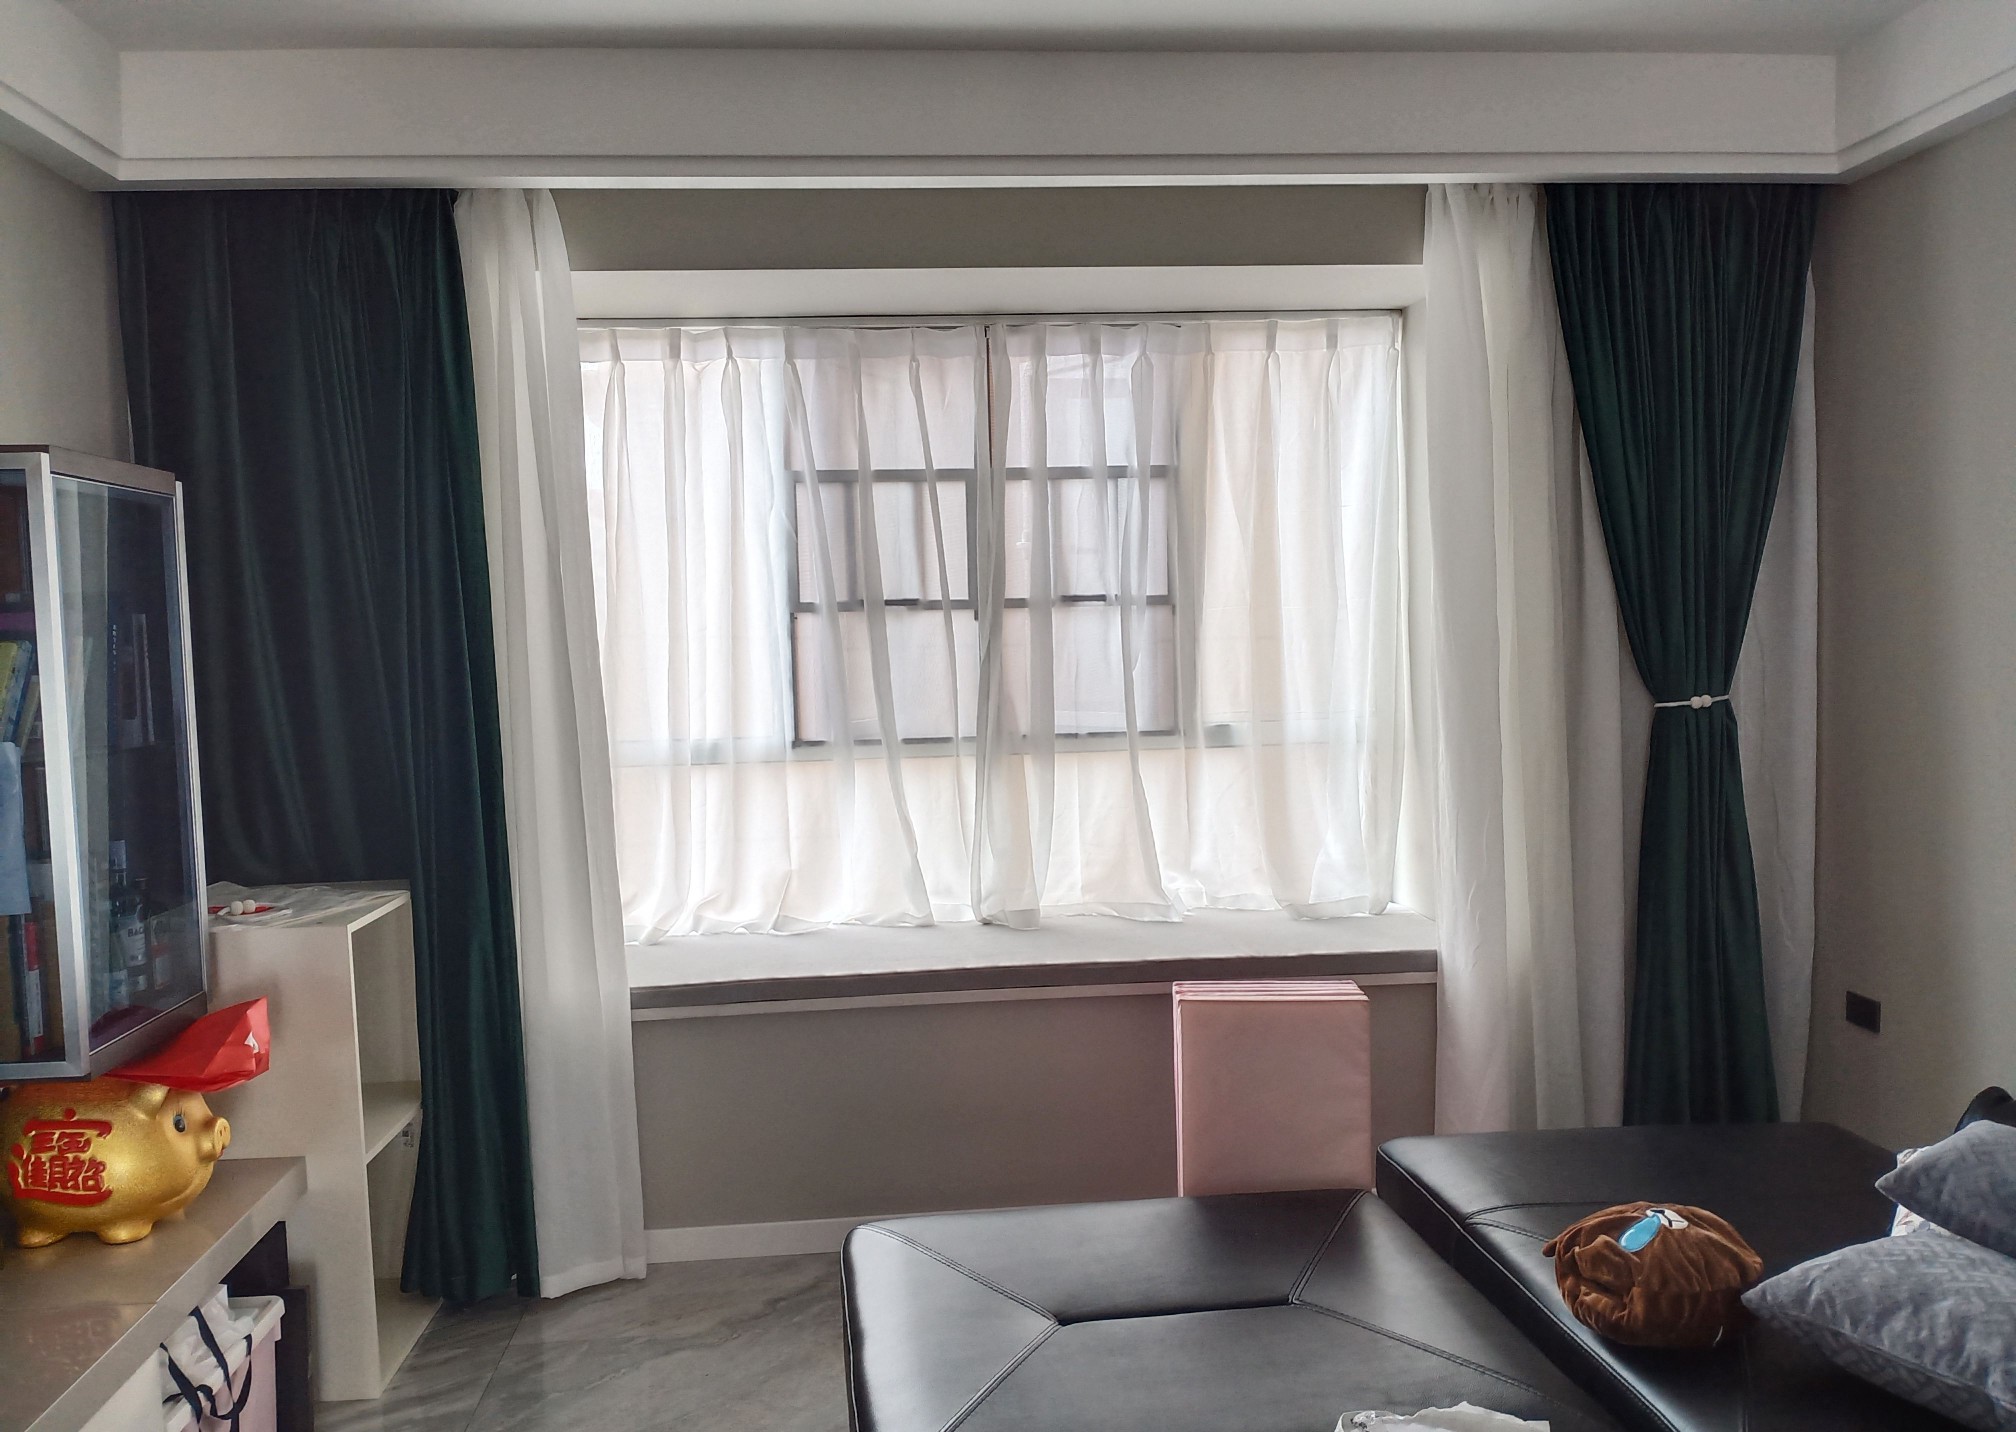 海口市3房1厅窗帘制作安装案例